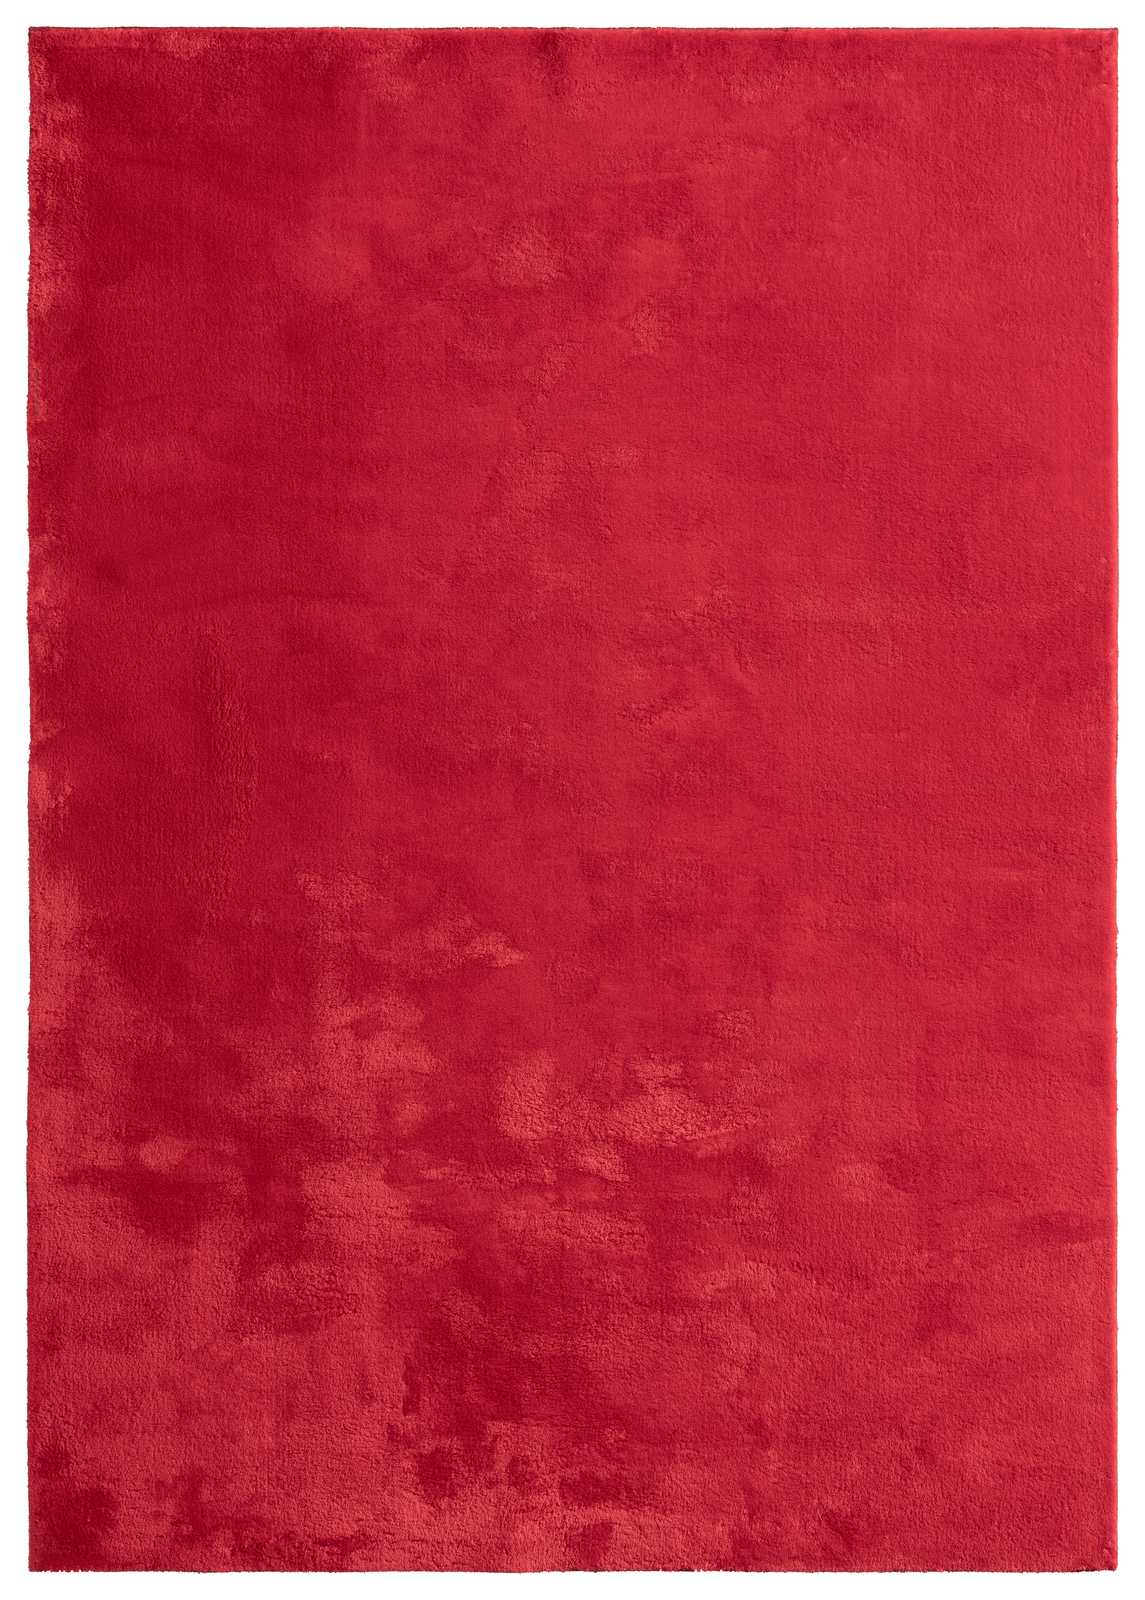             Besonders weicher Hochflor Teppich in Rot – 290 x 200 cm
        